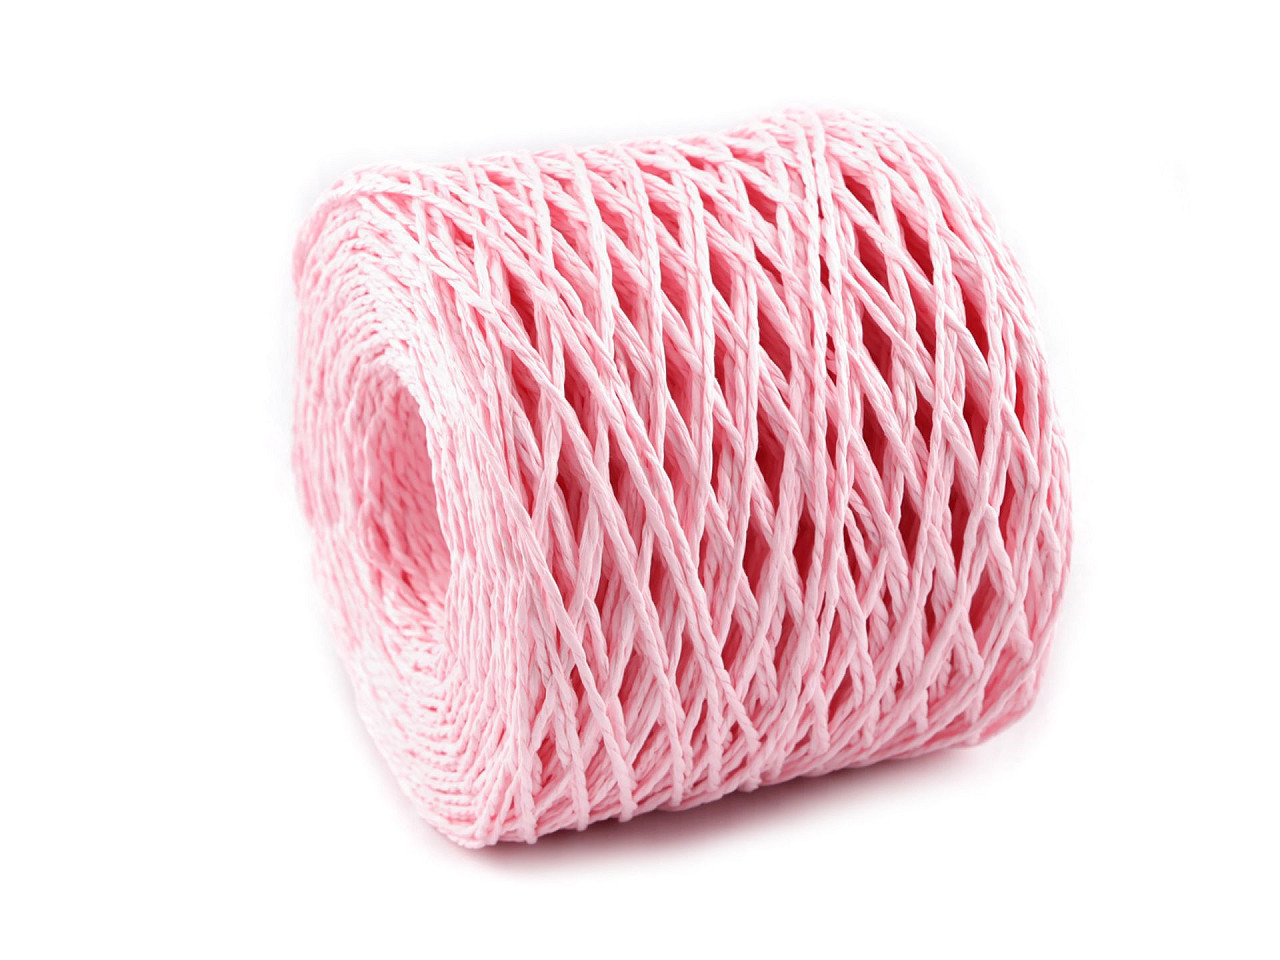 Lýko rafie k pletení tašek Ø1,5 mm, barva 5 růžová sv.